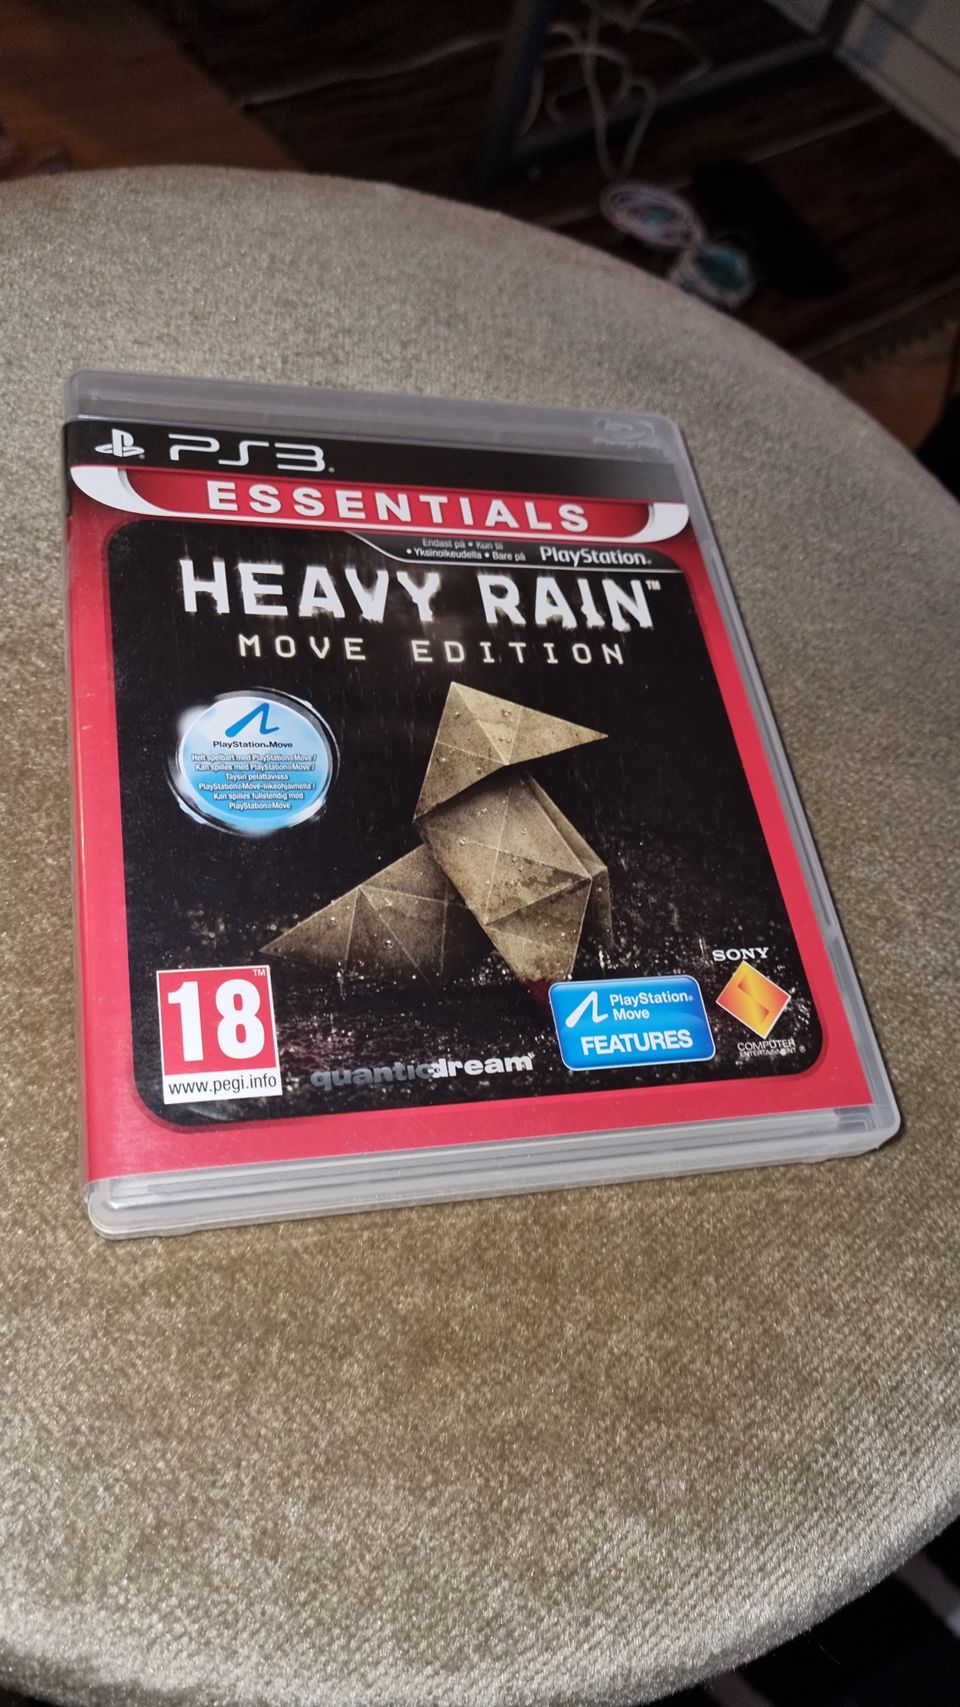 PS3/Playstation 3: Heavy Rain "Move edition"